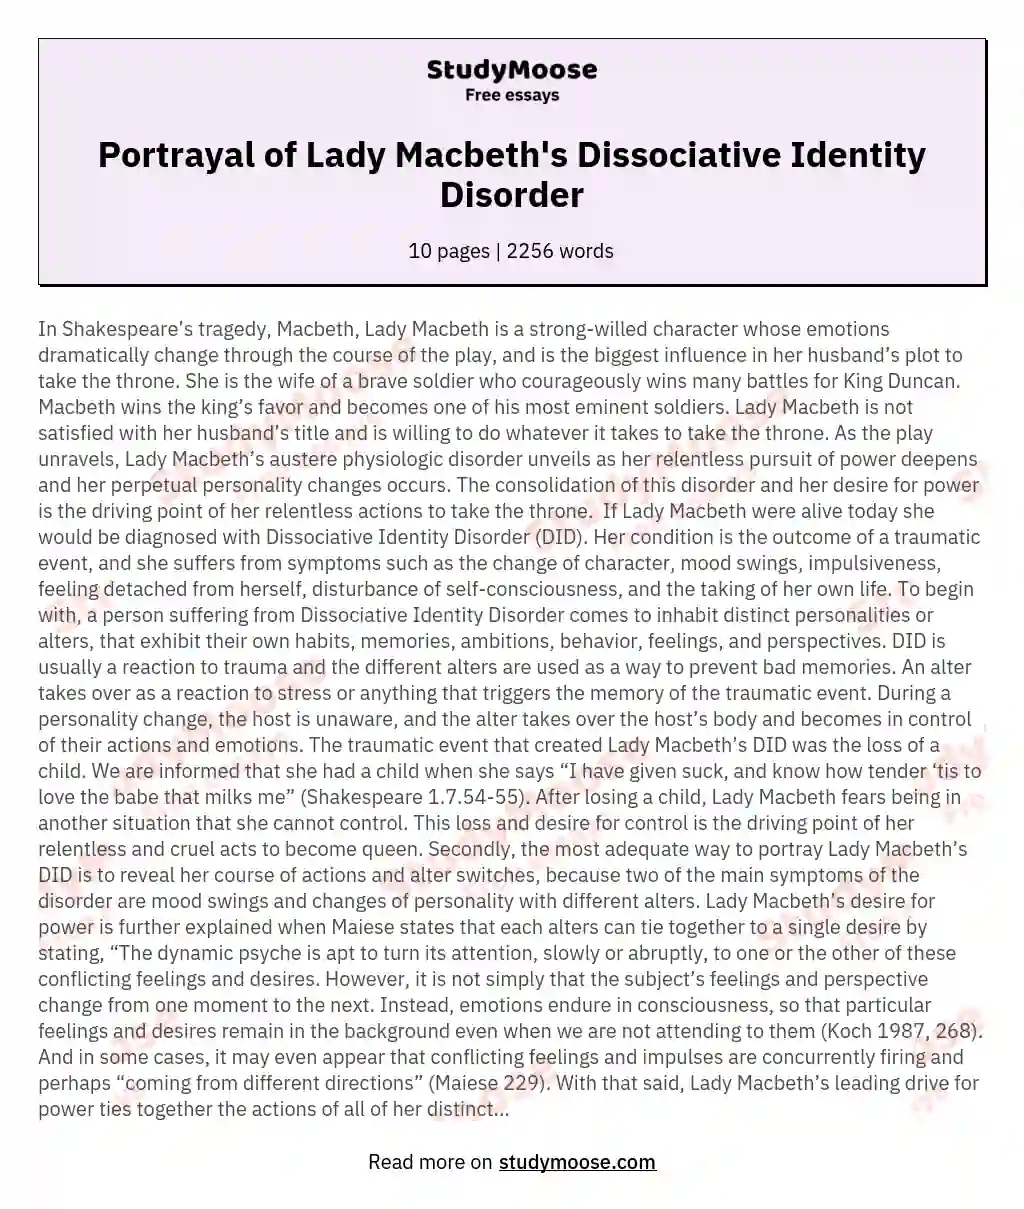 Portrayal of Lady Macbeth's Dissociative Identity Disorder